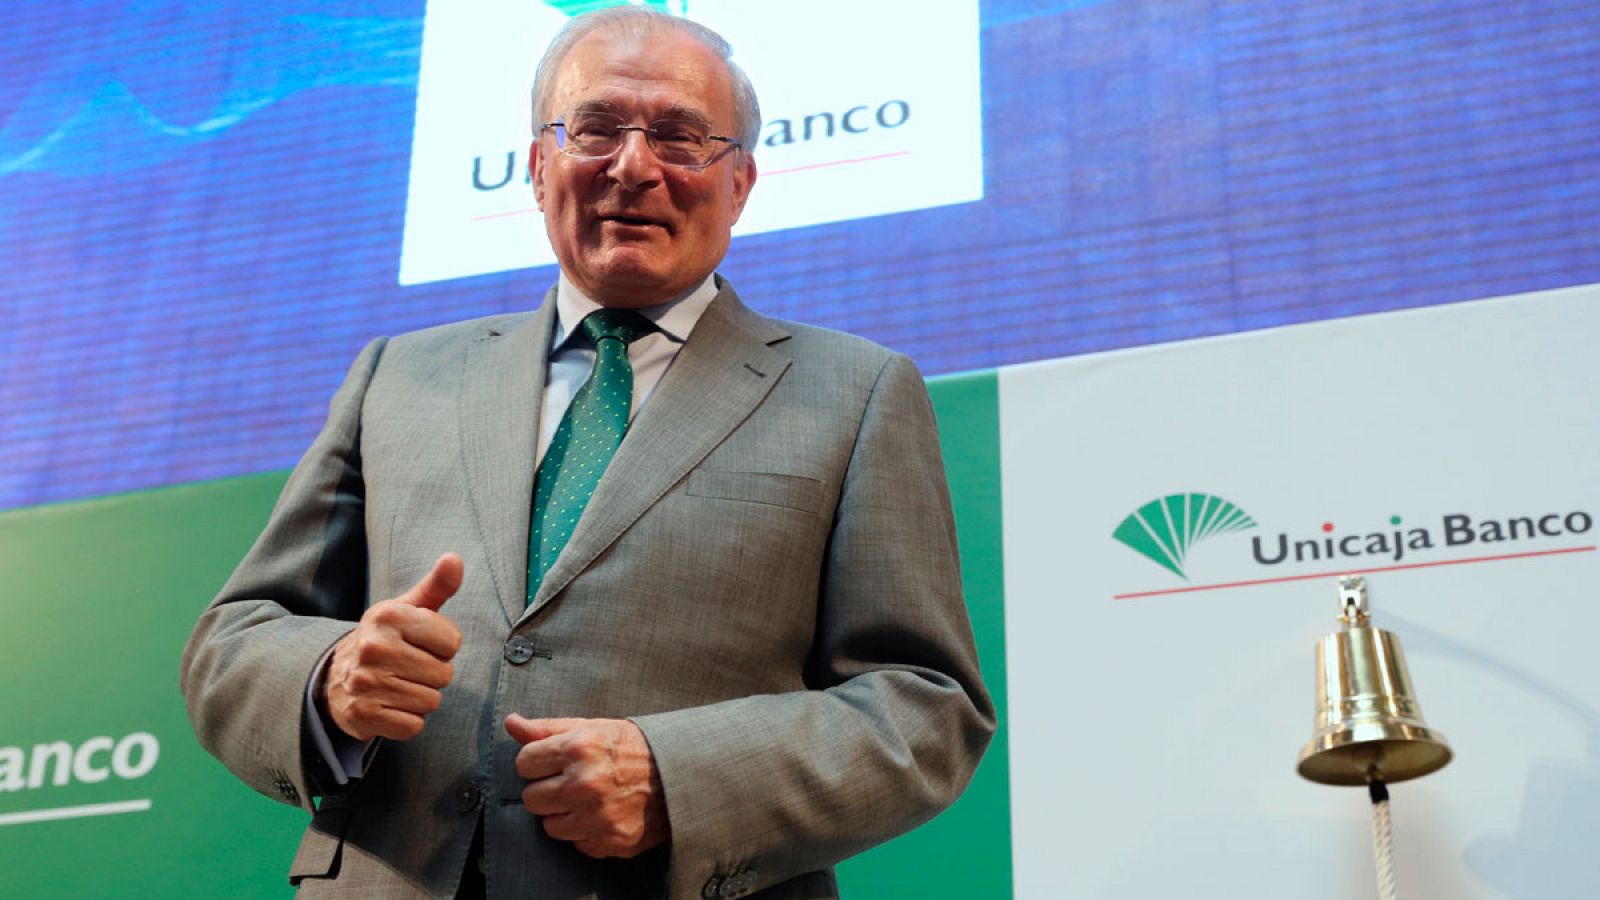 El presidente de Unicaja Banco, Manuel Azuaga, durante el debut en Bolsa del banco andaluz